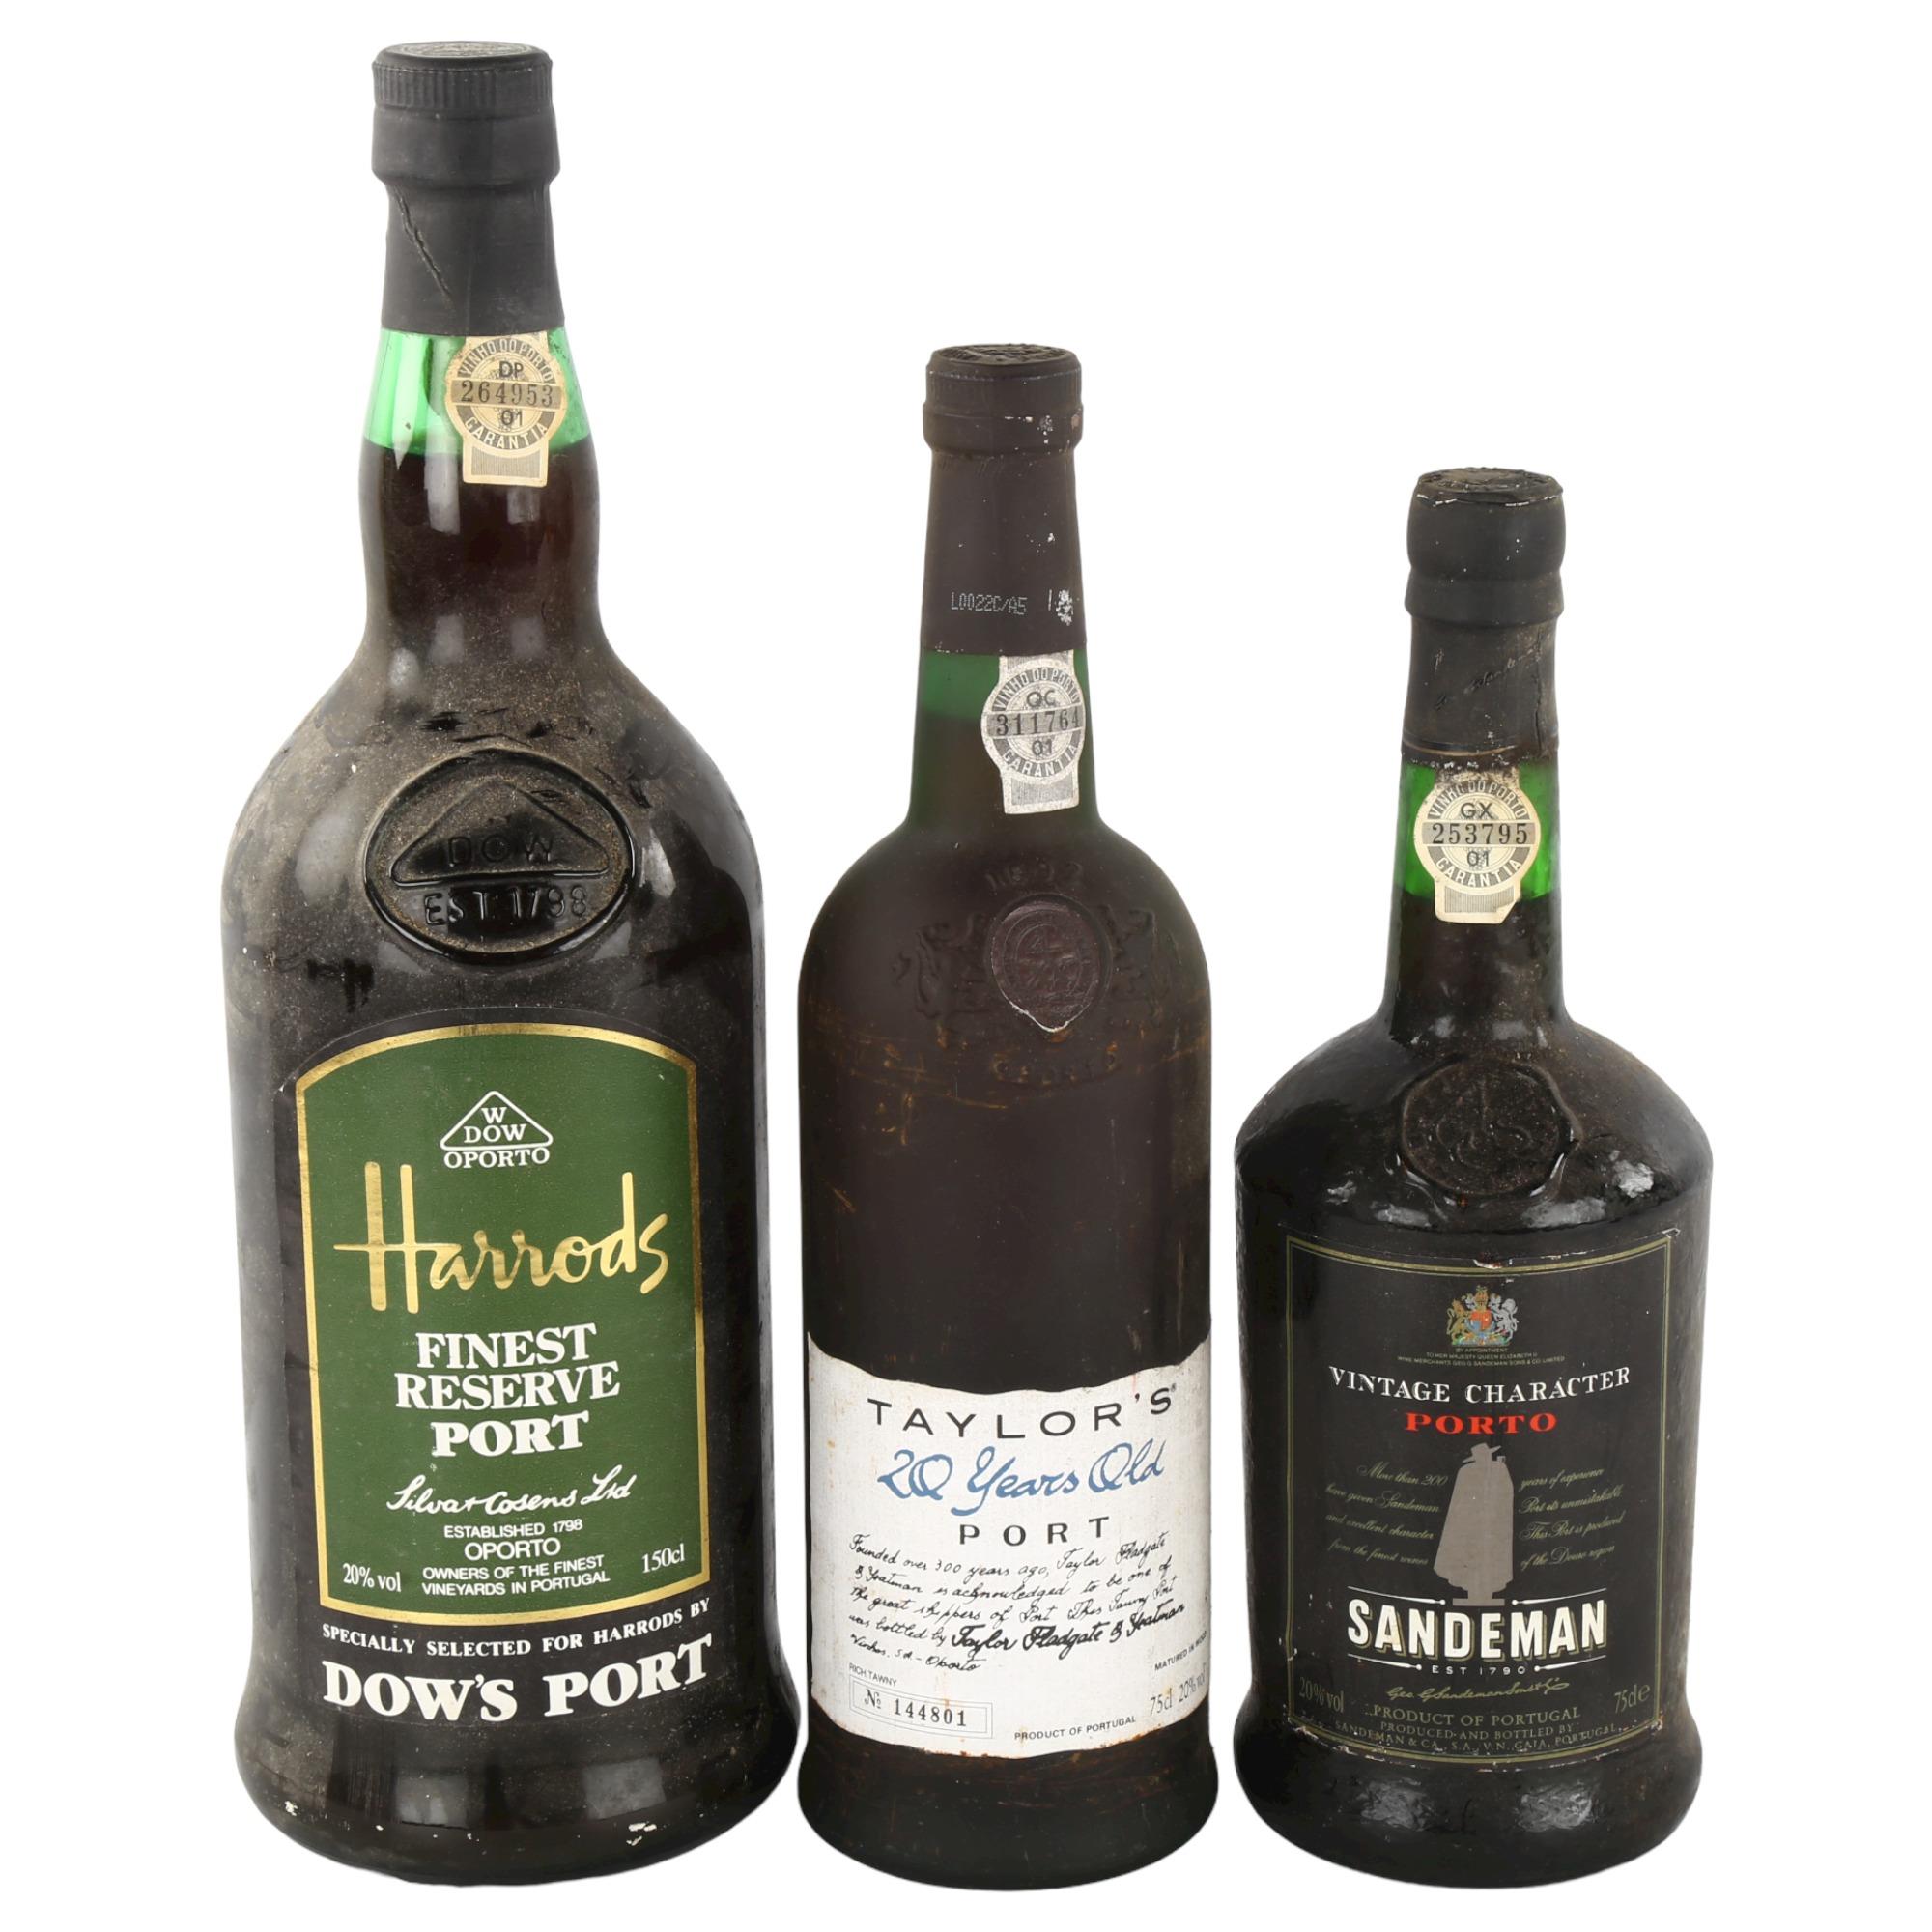 3 bottles of port wine, Magnum NV Dow's bottled for Harrods, Taylor's 20 yr old bottled 1995,